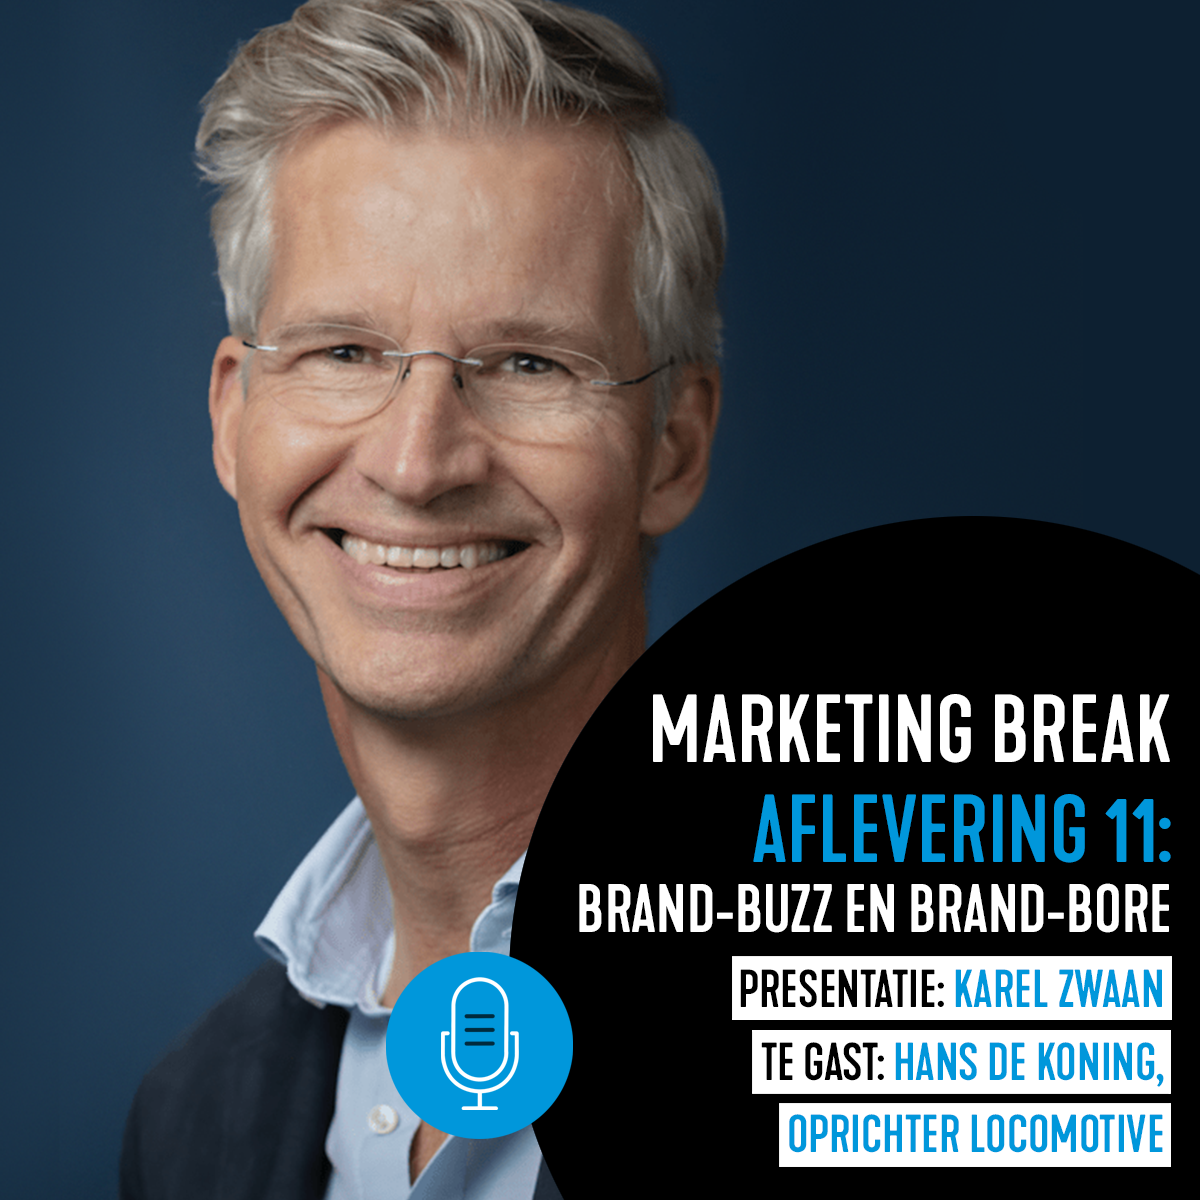 Marketing Break: Brand-buzz en brand-bore